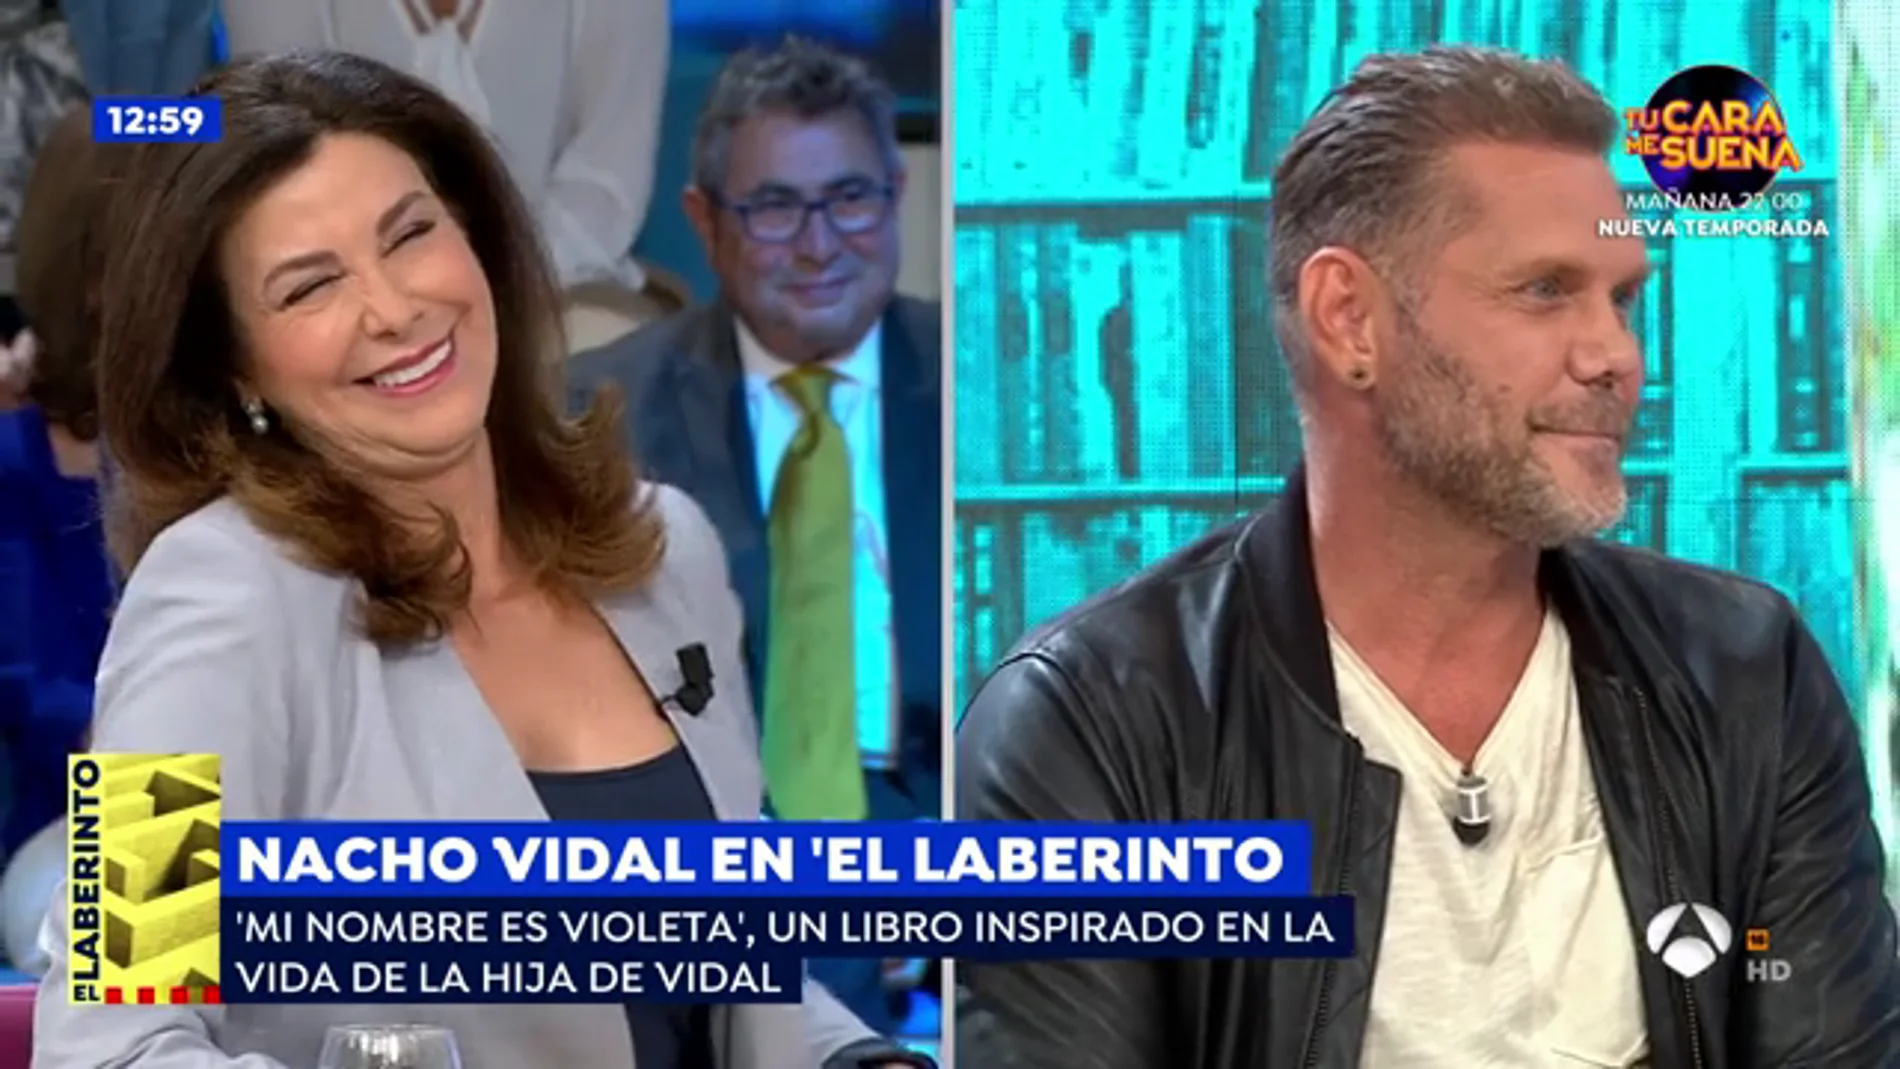 El divertido momento en el que Arenales Serrano descubre en 'Espejo Público' que Nacho Vidal es actor porno